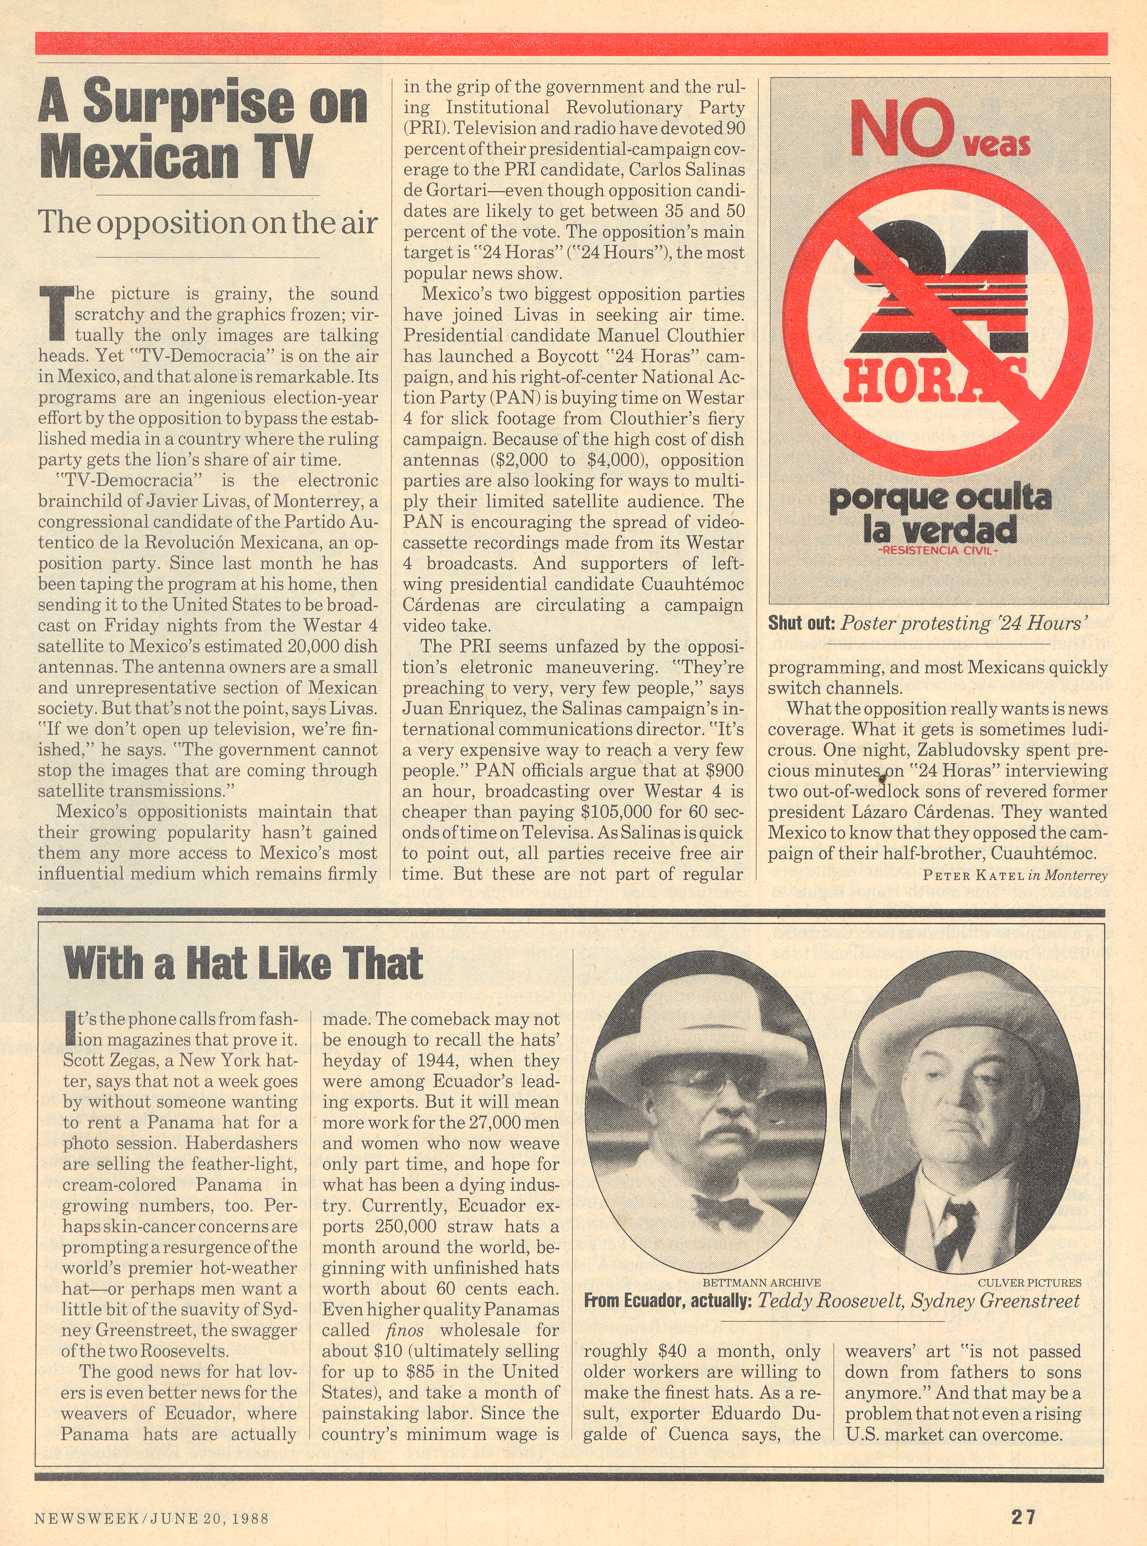 Peter Katel in Monterrey – NEWSWEEK Magazine (1988)